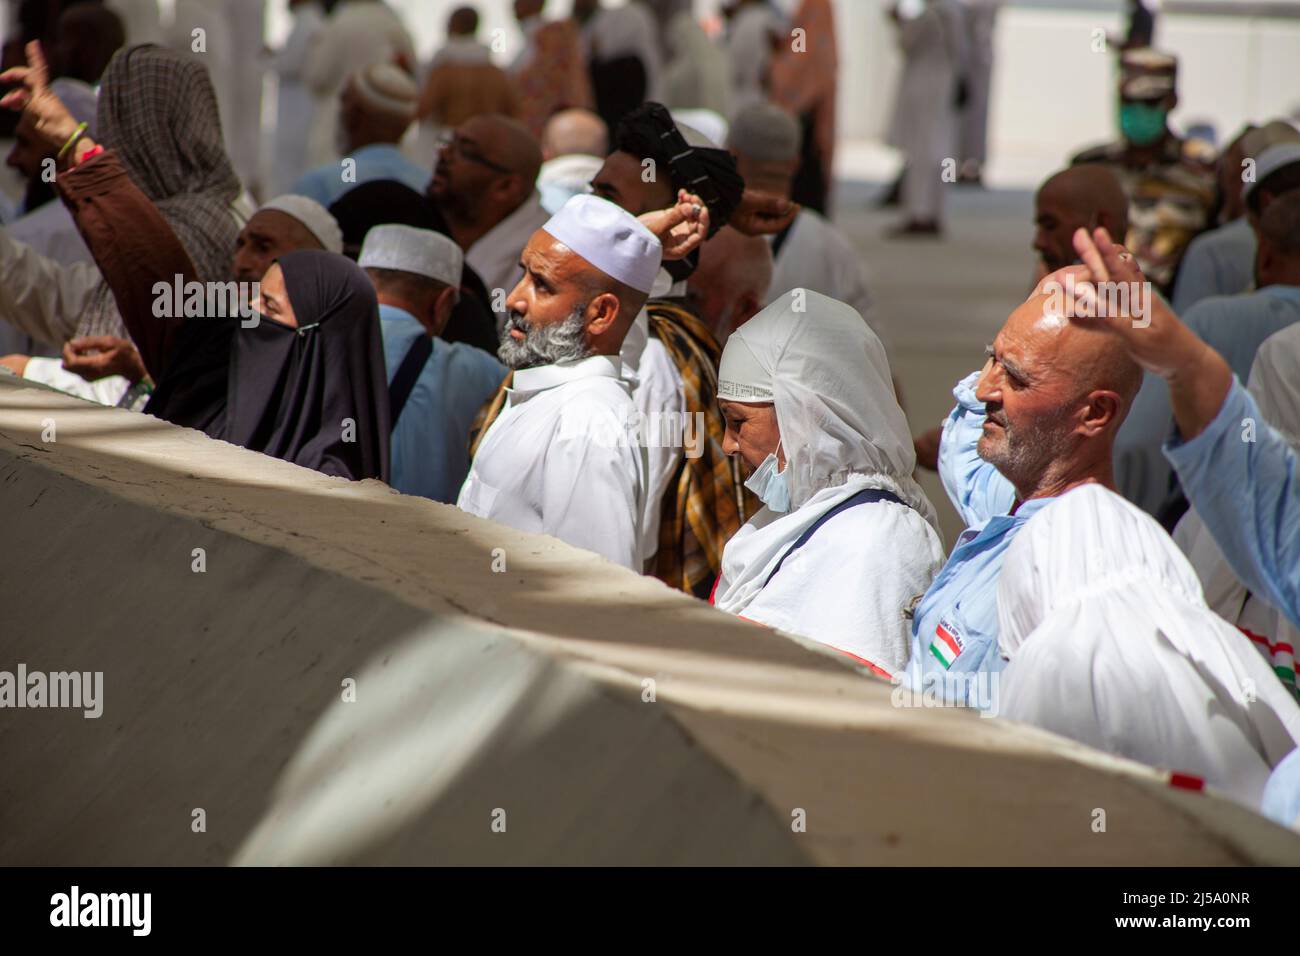 Peregrinos que realizan el ritual de lapidación durante la temporada de Hajj en la Arabia Saudita de Makkah Foto de stock